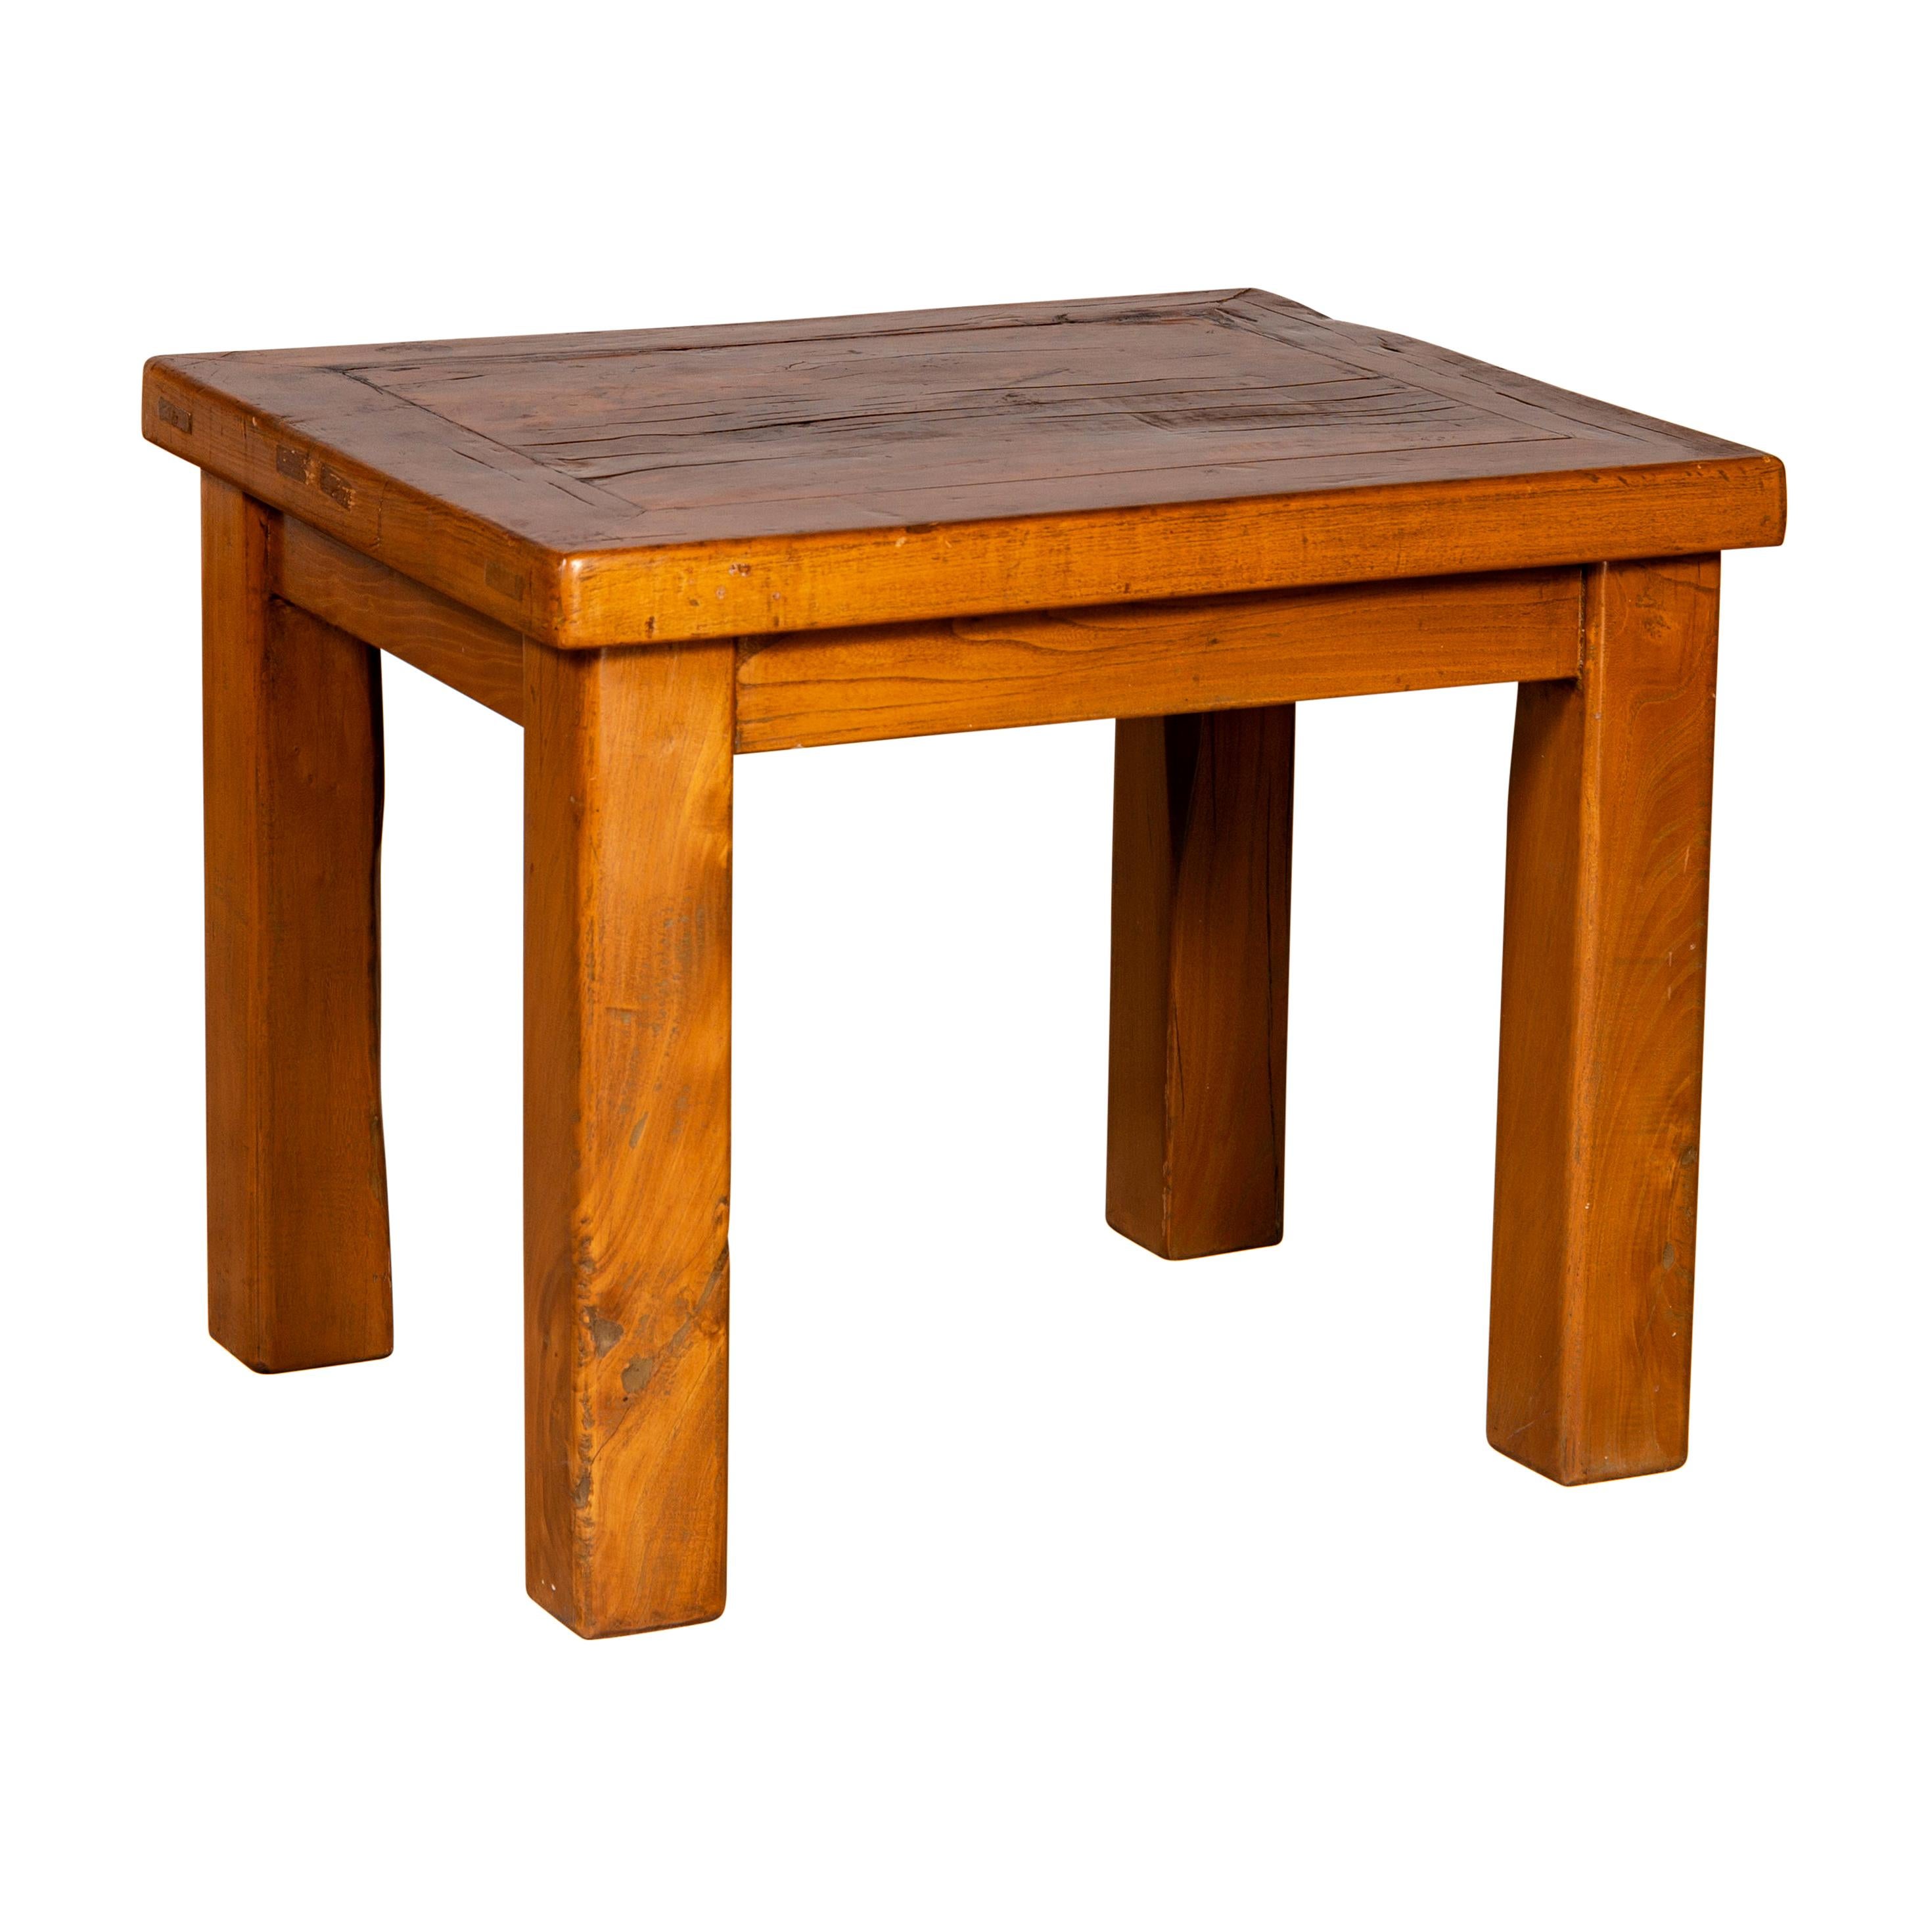 Table d'appoint chinoise vintage en bois naturel avec pieds carrés et design contemporain